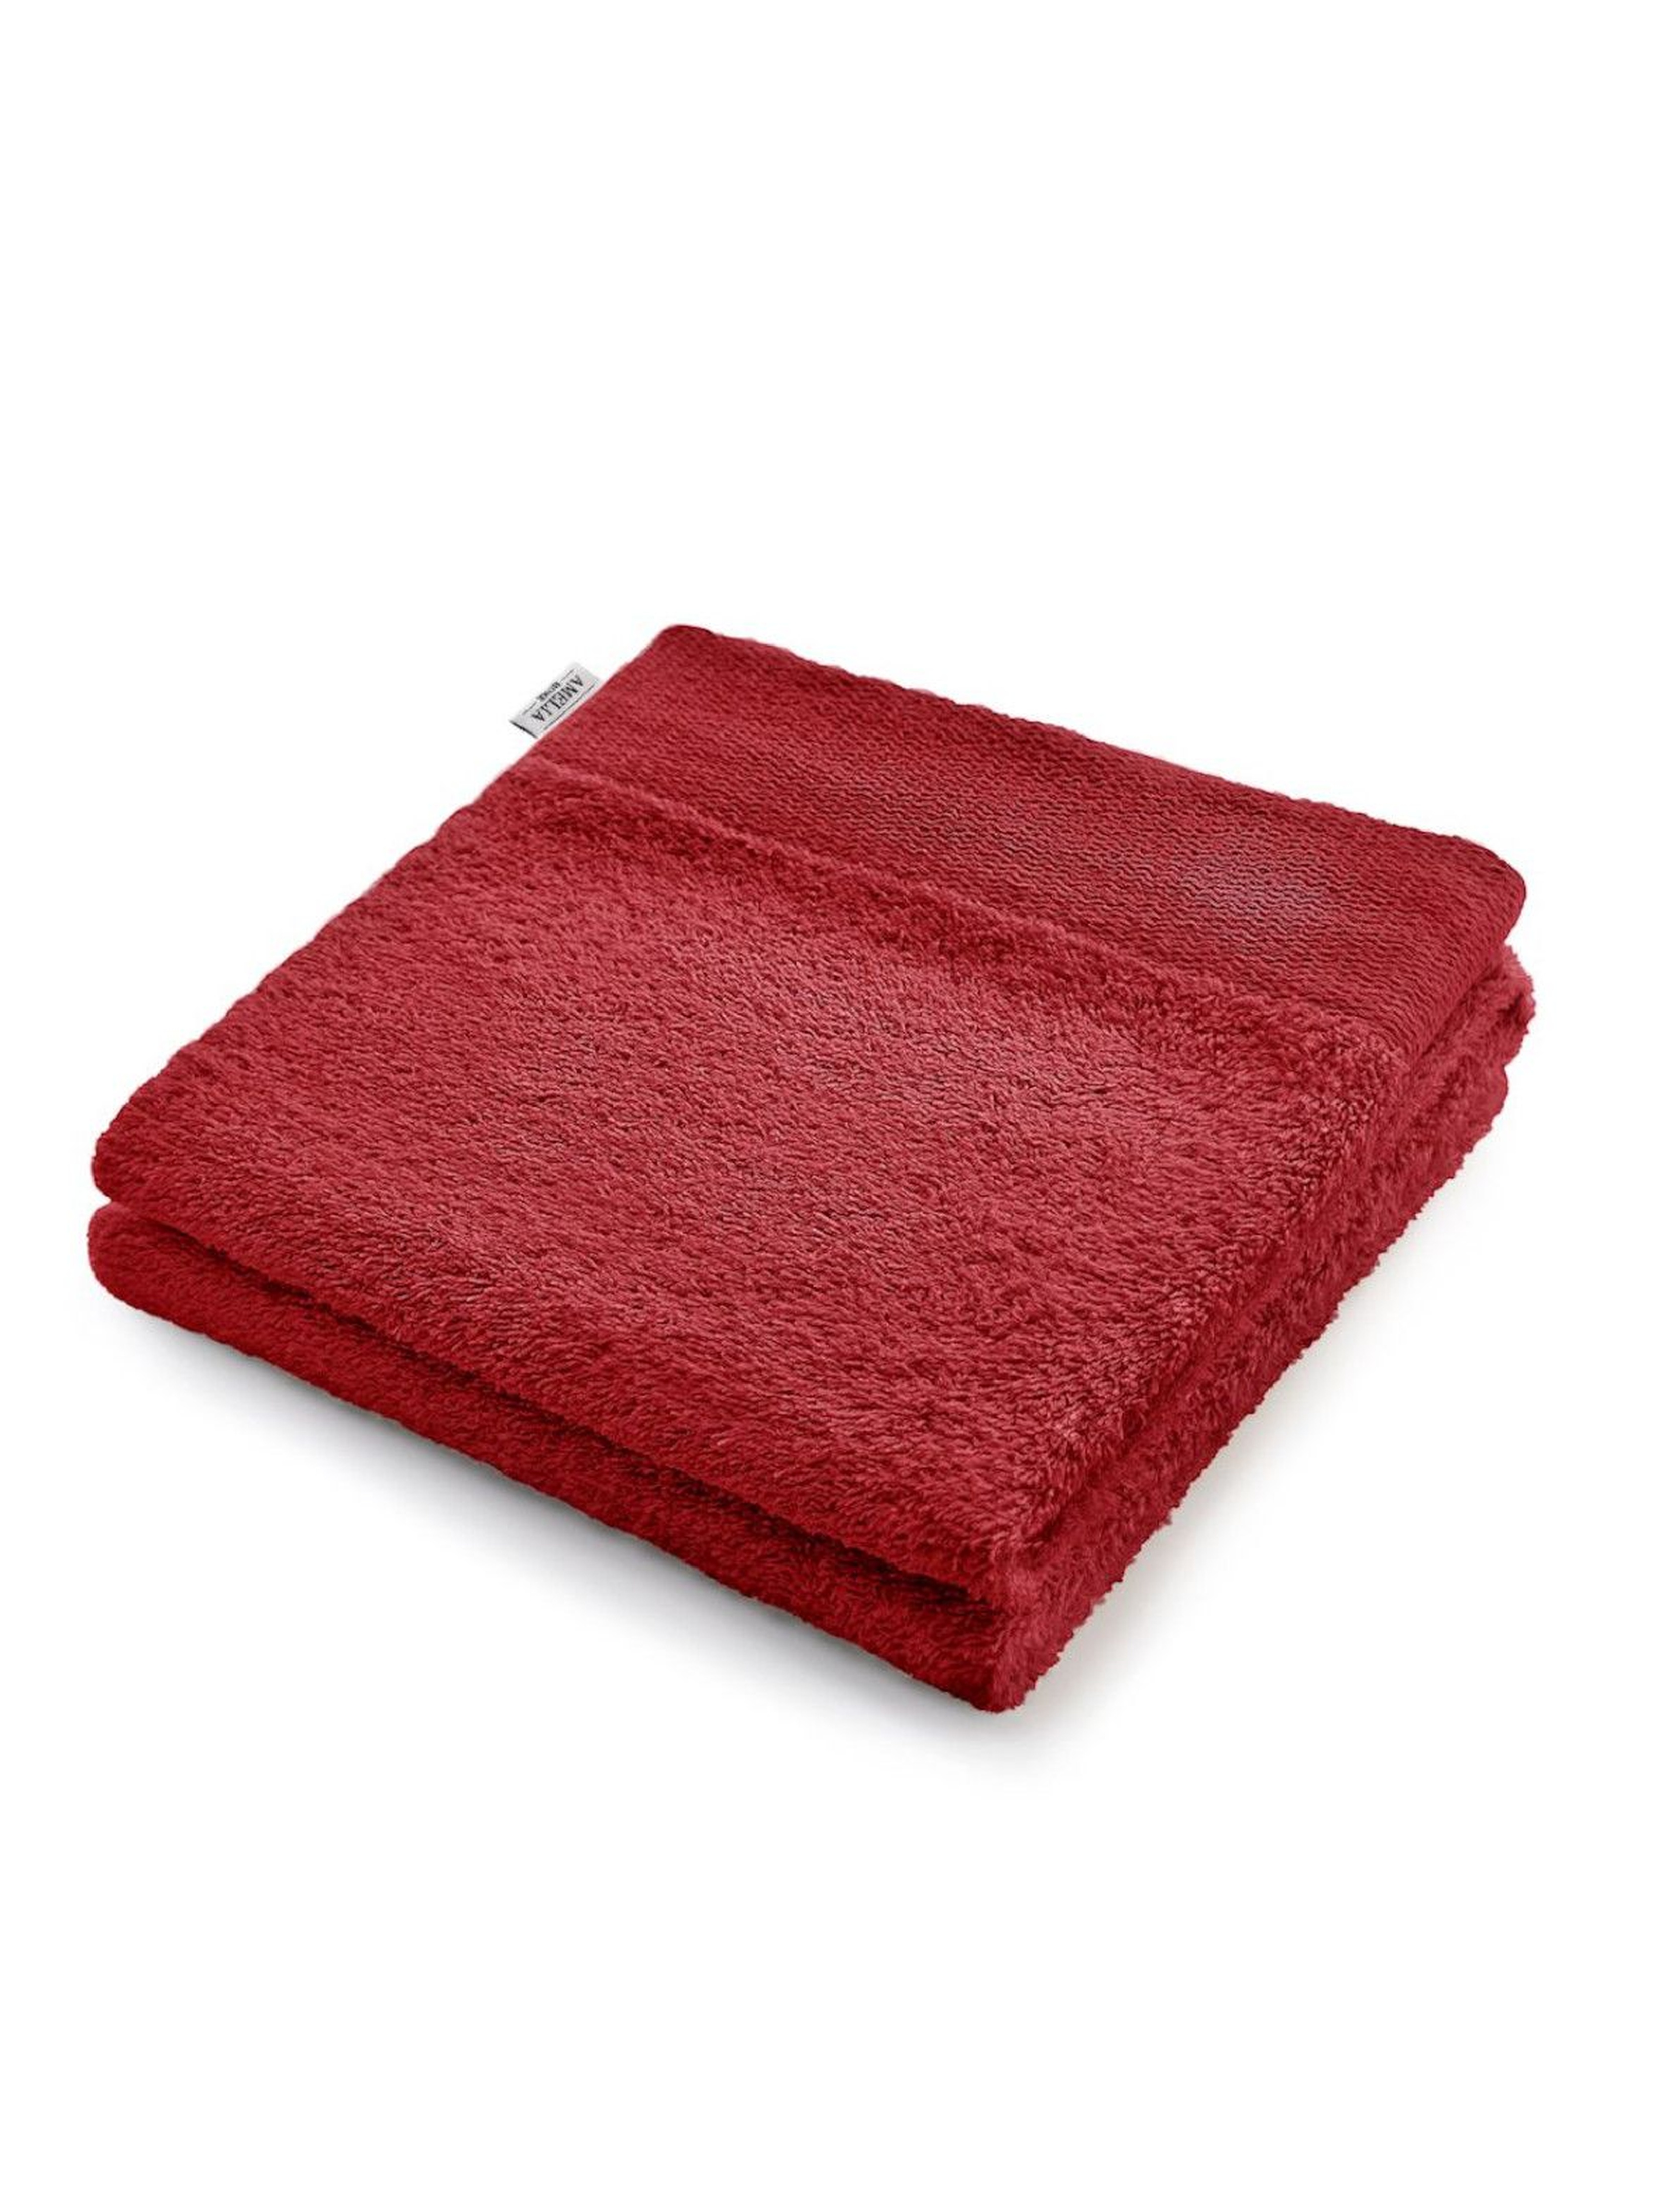 Ręcznik bawełniany AmeliaHome bordowy - 70x140 cm